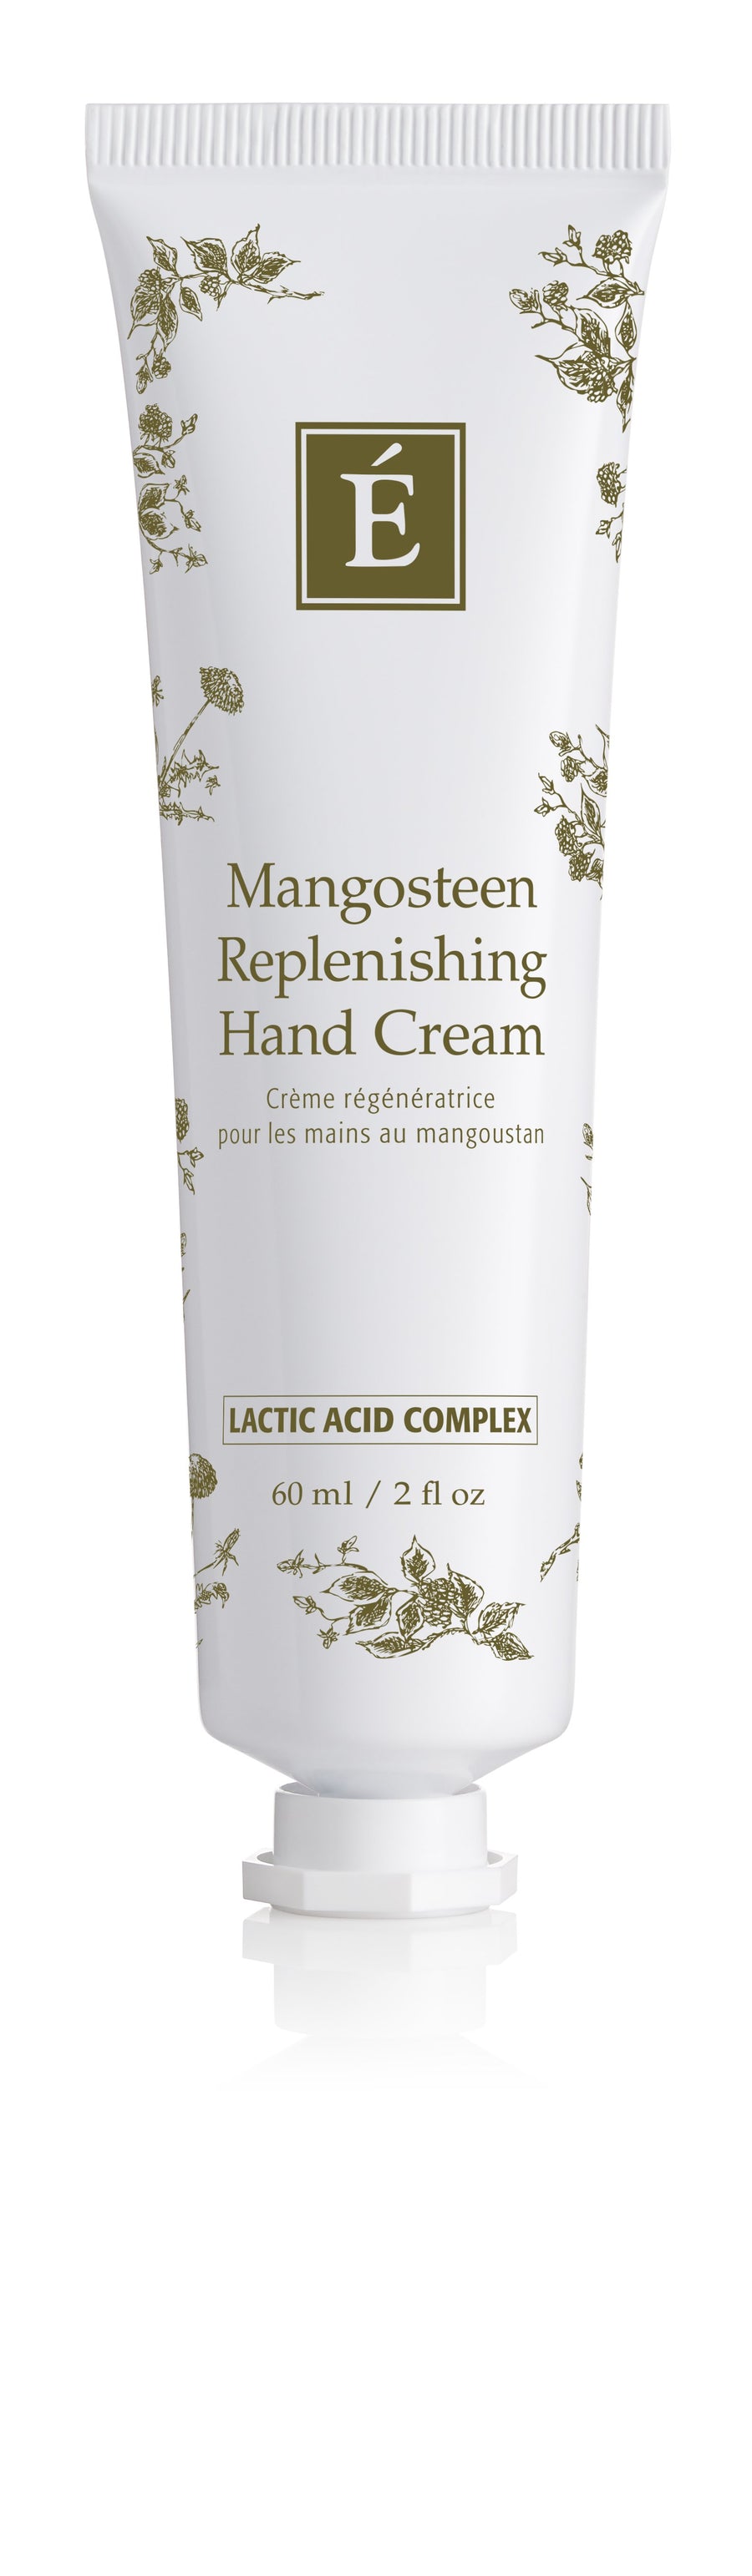 Eminence Organics Mangosteen Replenishing Hand Cream